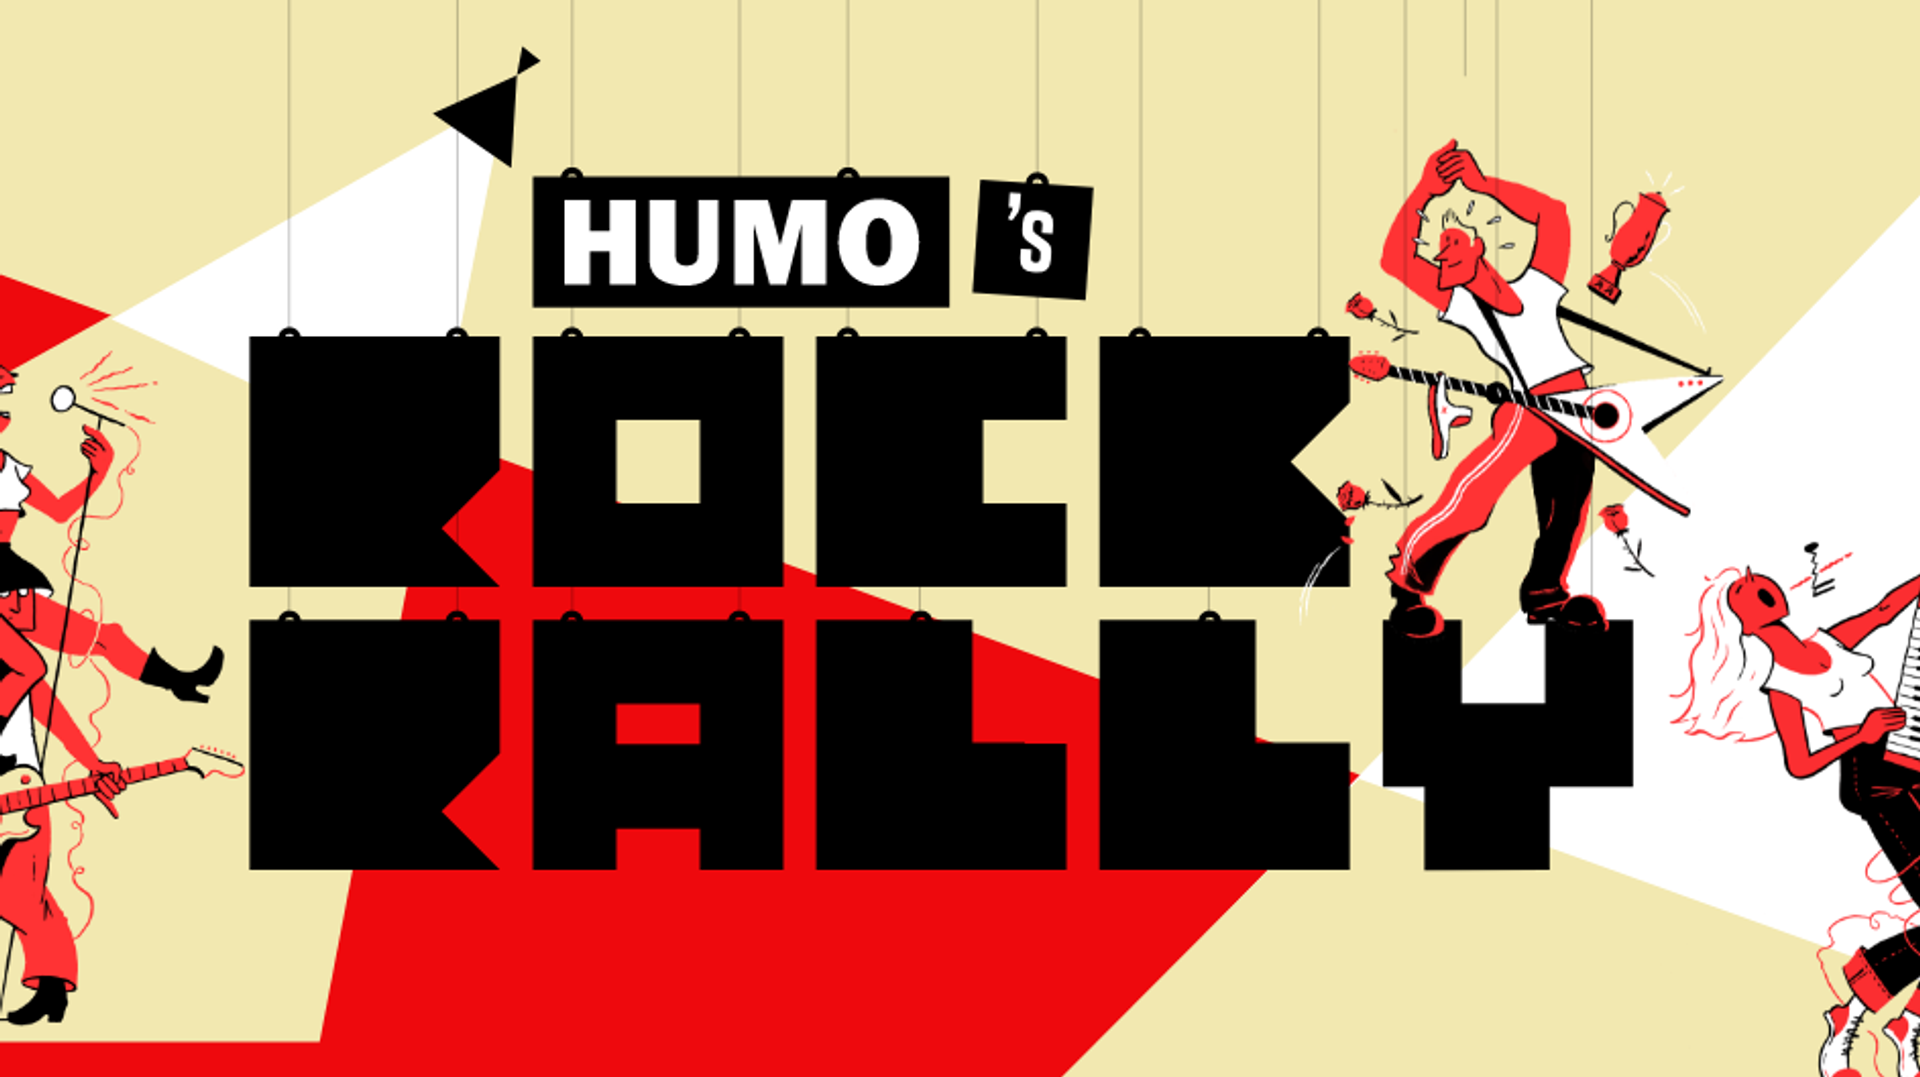 voorronde Humo's Rock Rally - promobeeld